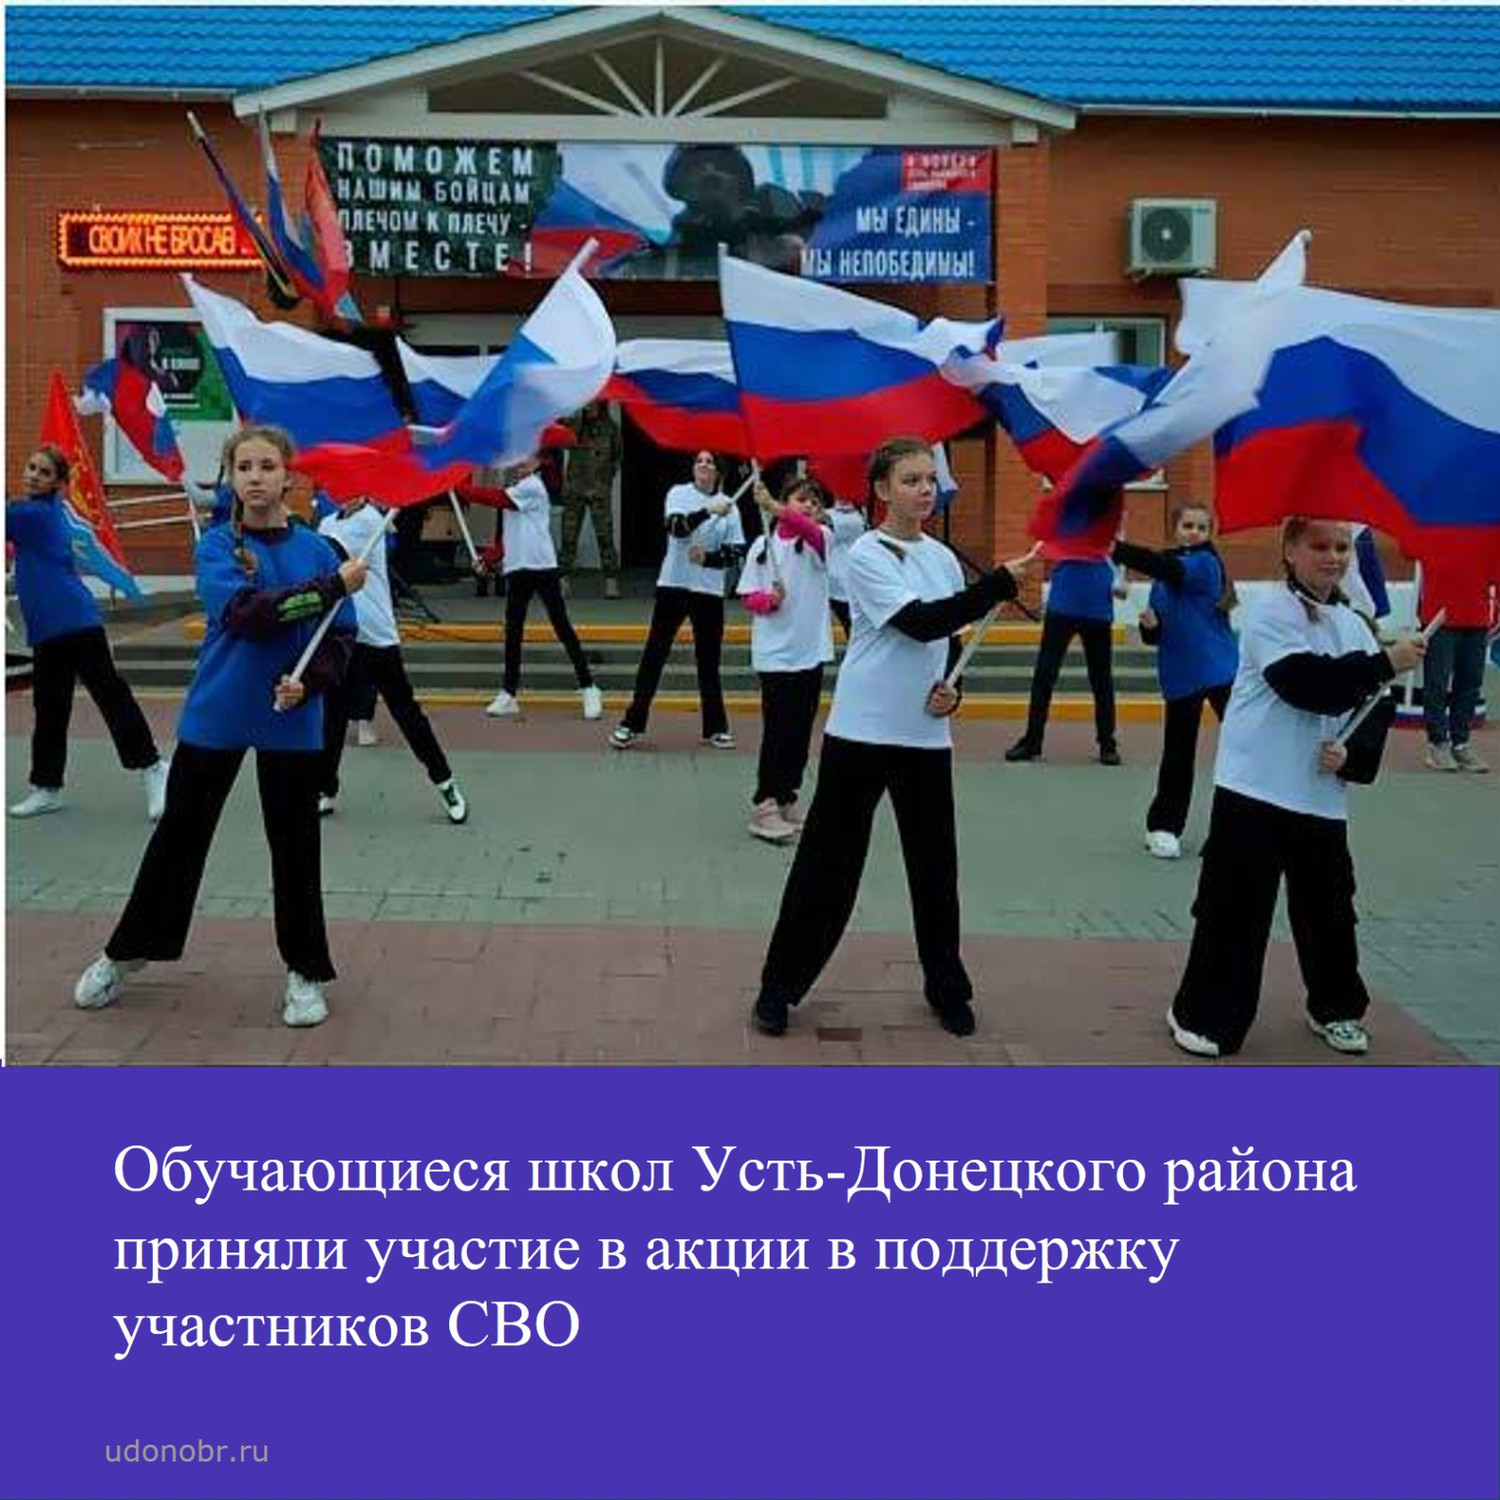 Обучающиеся школ Усть-Донецкого района приняли участие в акции в поддержку участников СВО